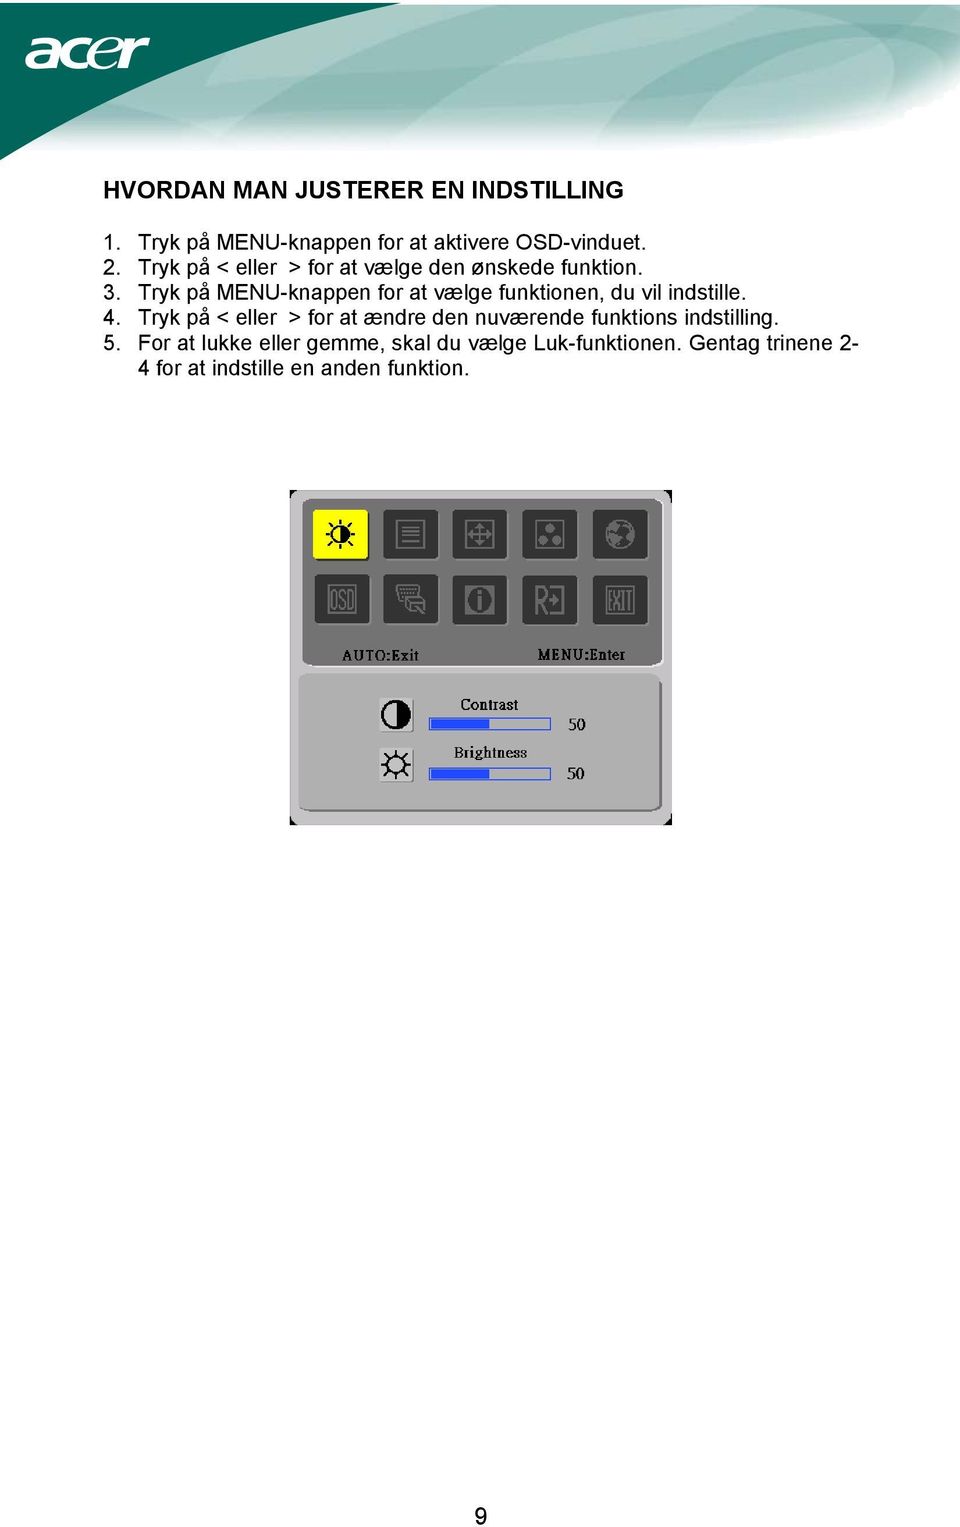 Tryk på MENU-knappen for at vælge funktionen, du vil indstille. 4.